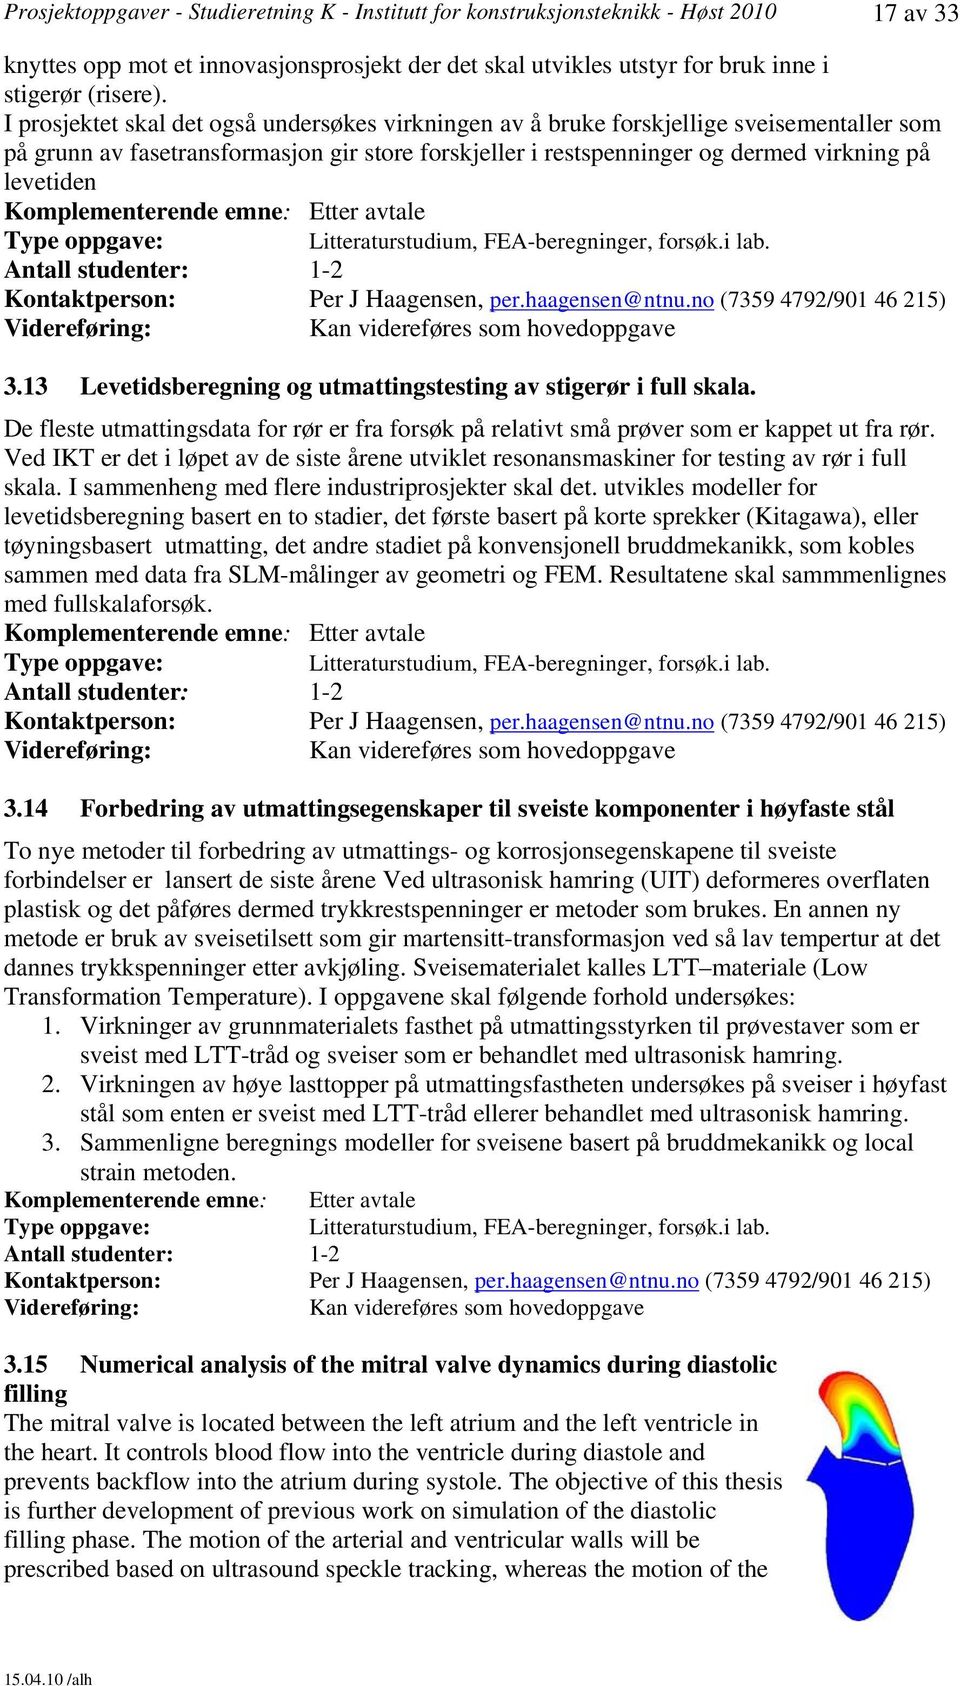 Komplementerende emne: Etter avtale Litteraturstudium, FEA-beregninger, forsøk.i lab. Per J Haagensen, per.haagensen@ntnu.no (7359 4792/901 46 215) Kan videreføres som hovedoppgave 3.